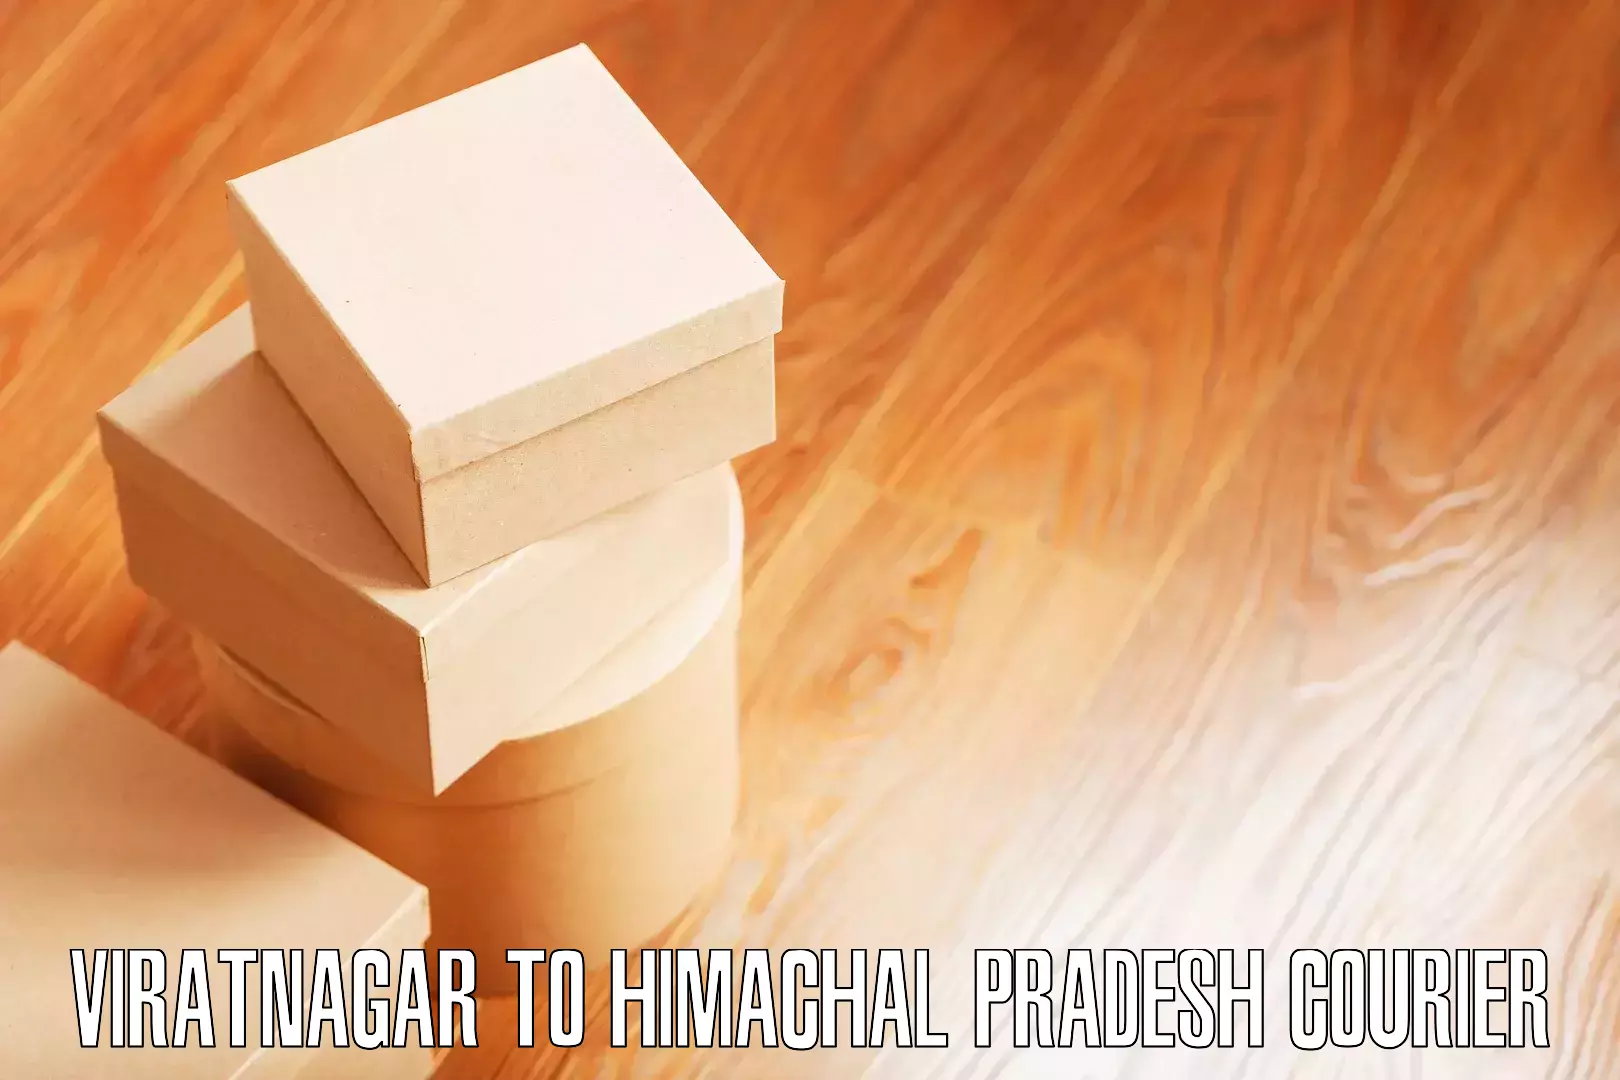 Moving and packing experts Viratnagar to Gagret